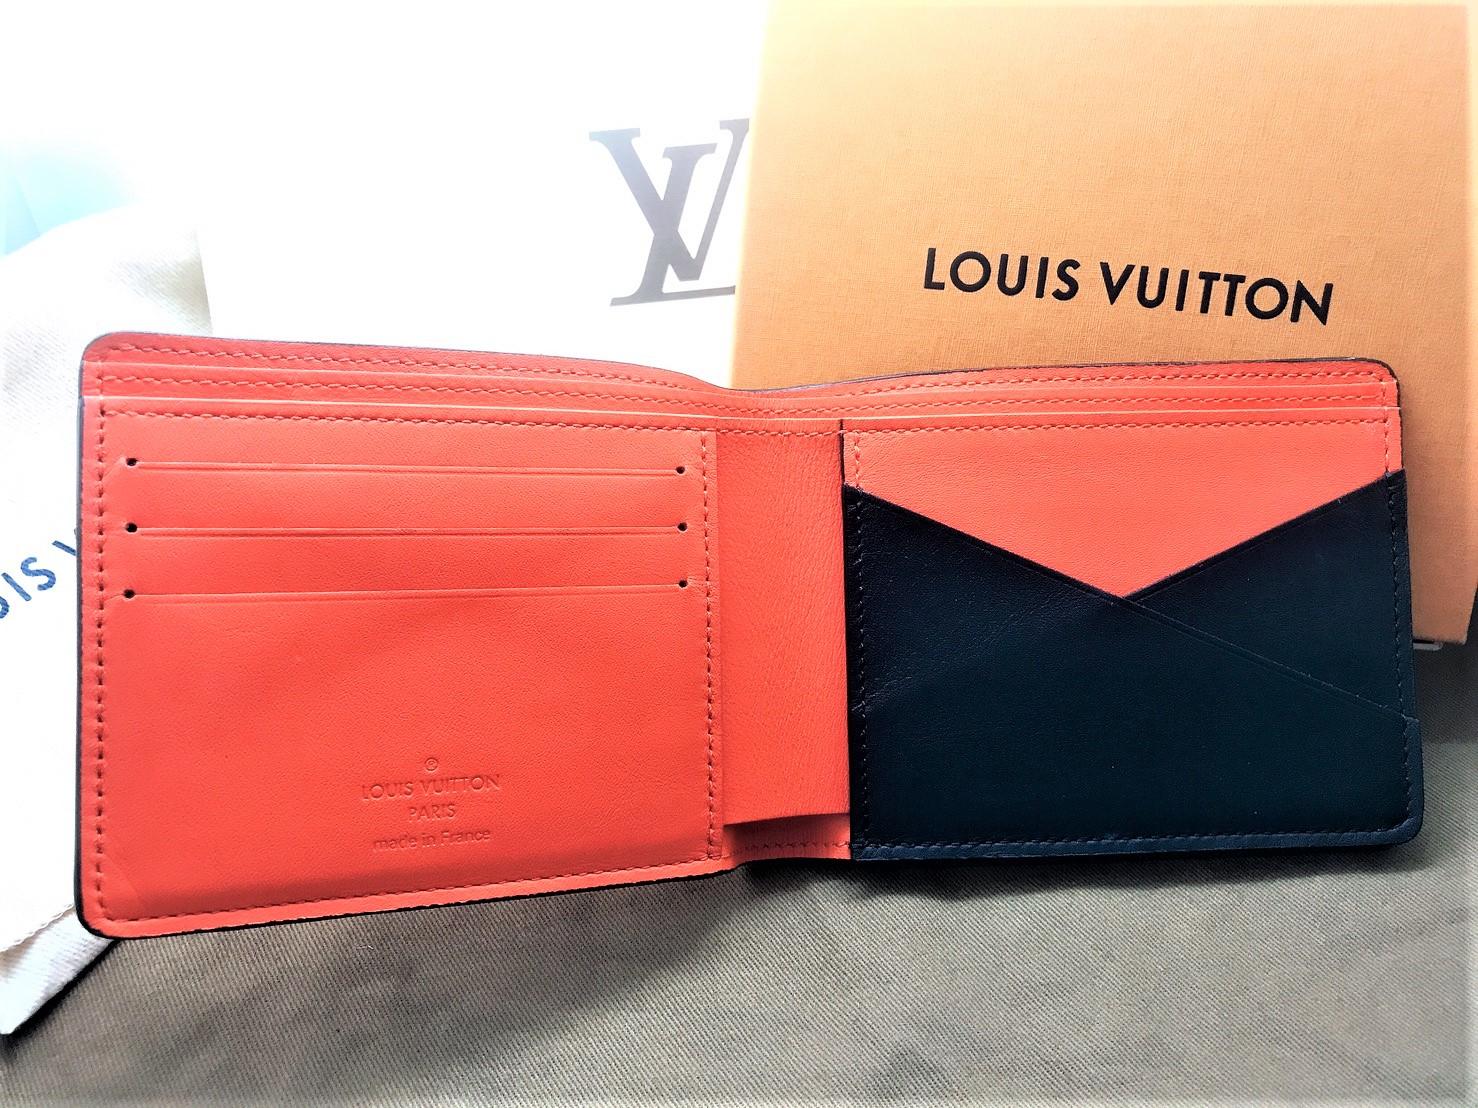 Louis Vuitton le dice adiós a su icónico empaque marrón